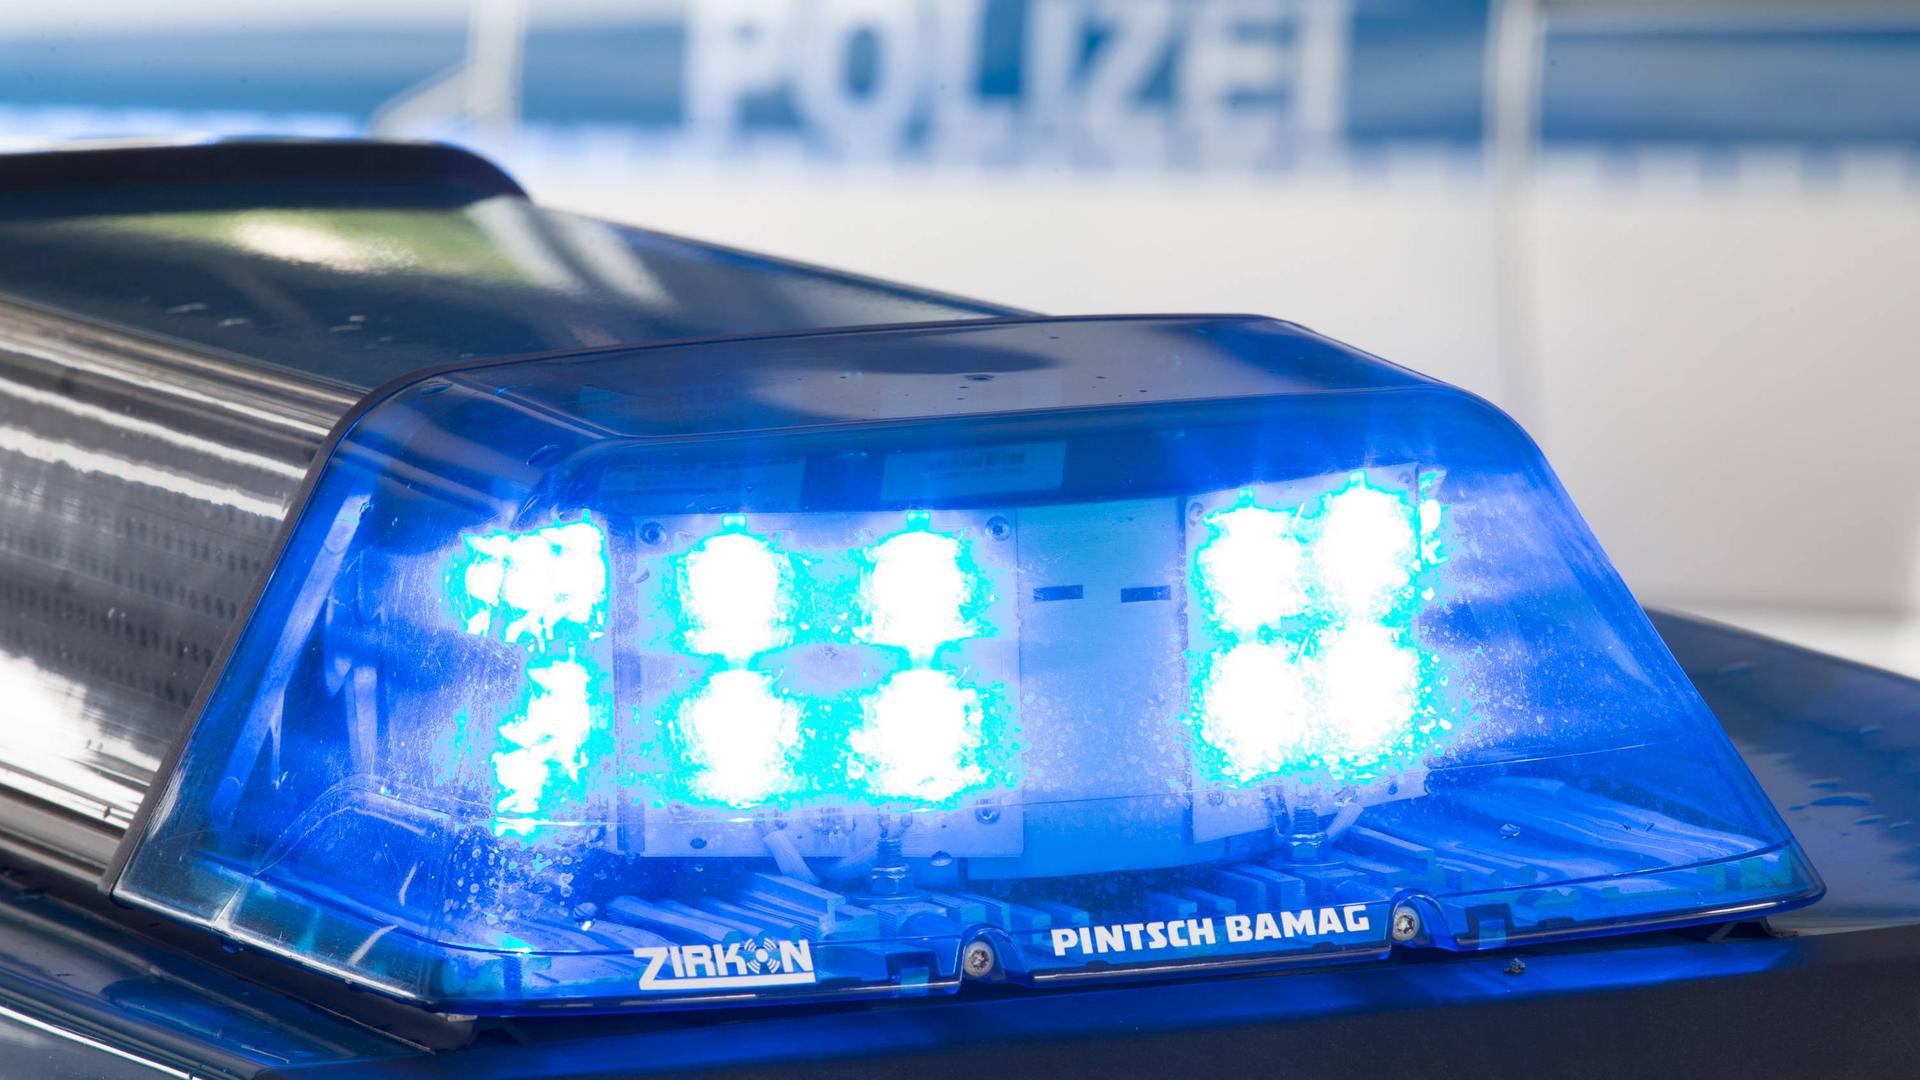 ARCHIV - Eine Blaulicht leuchtet am 27.07.2015 in Osnabrück (Niedersachsen) auf dem Dach eines Polizeiwagens. Im Hintergrund steht ein weiterer Streifenwagen. Foto: Friso Gentsch/dpa (Illustration zum Thema "Bombendrohung in Heilbronn - Festgelände geräumt" vom 30.07.2016) +++(c) dpa - Bildfunk+++ | Verwendung weltweit
